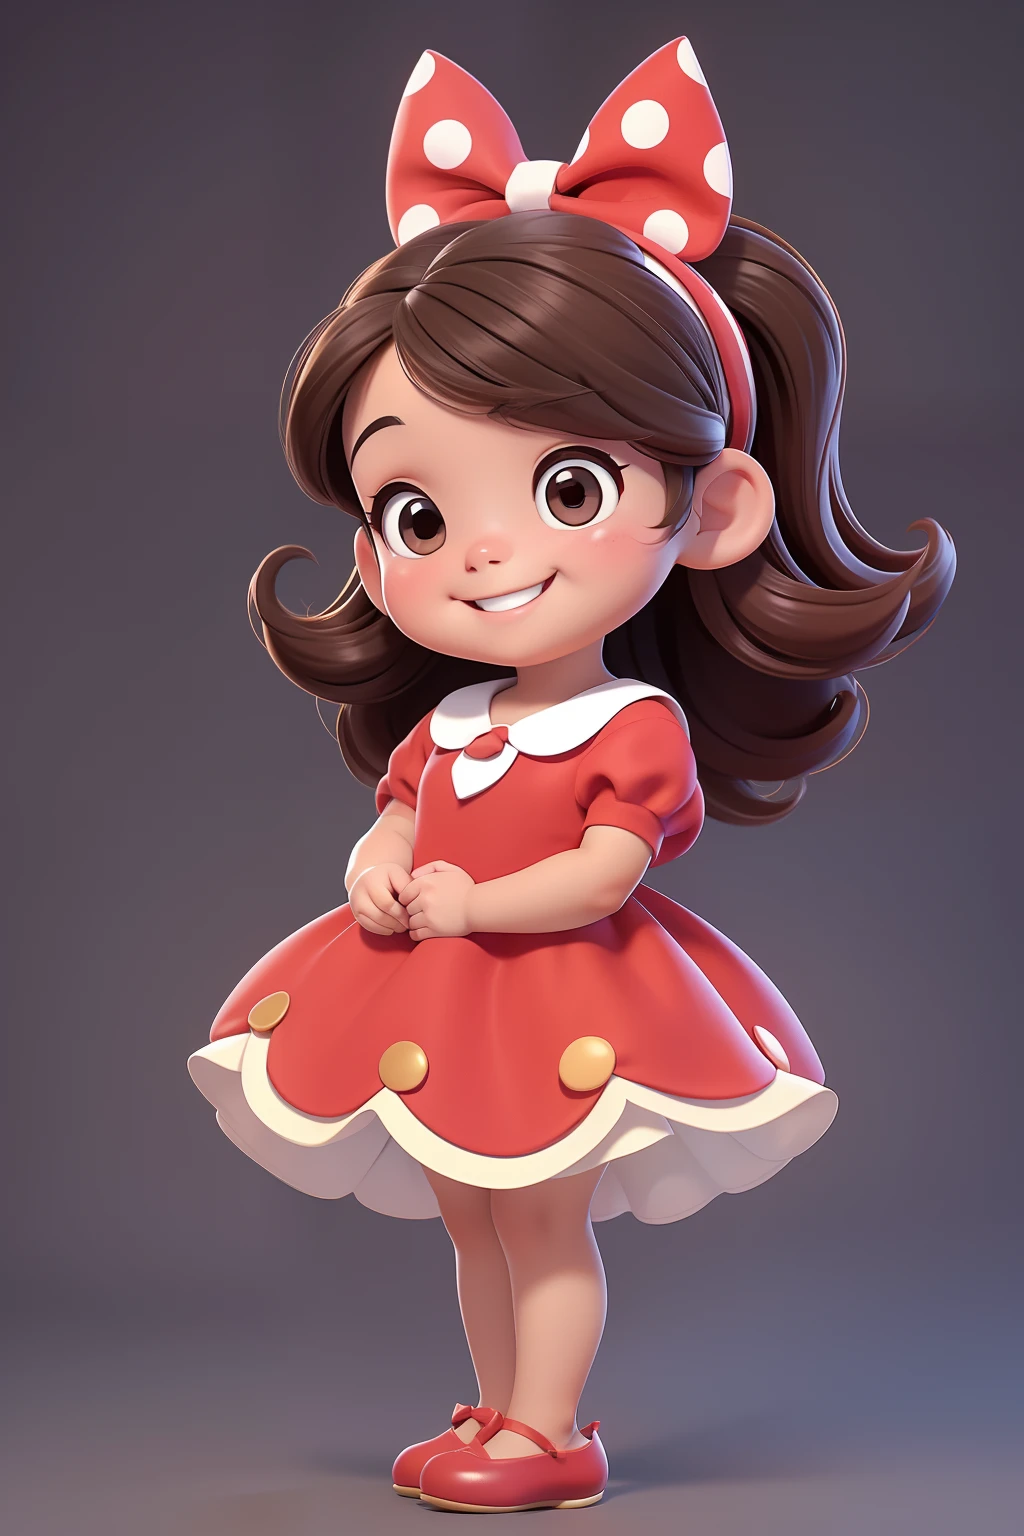 [(Una adorable chica morena sonriente :1.2)(Bebé pequeño y tierno)(pele clara)(feliz)][(luciendo un disfraz inspirado en &#39;Minnie&#39;) , ilustración infantil , fondo limpio], con un pequeño vestido rojo con lunares blancos y un lazo en el pelo, cuerpo entero, usar un zapato negro